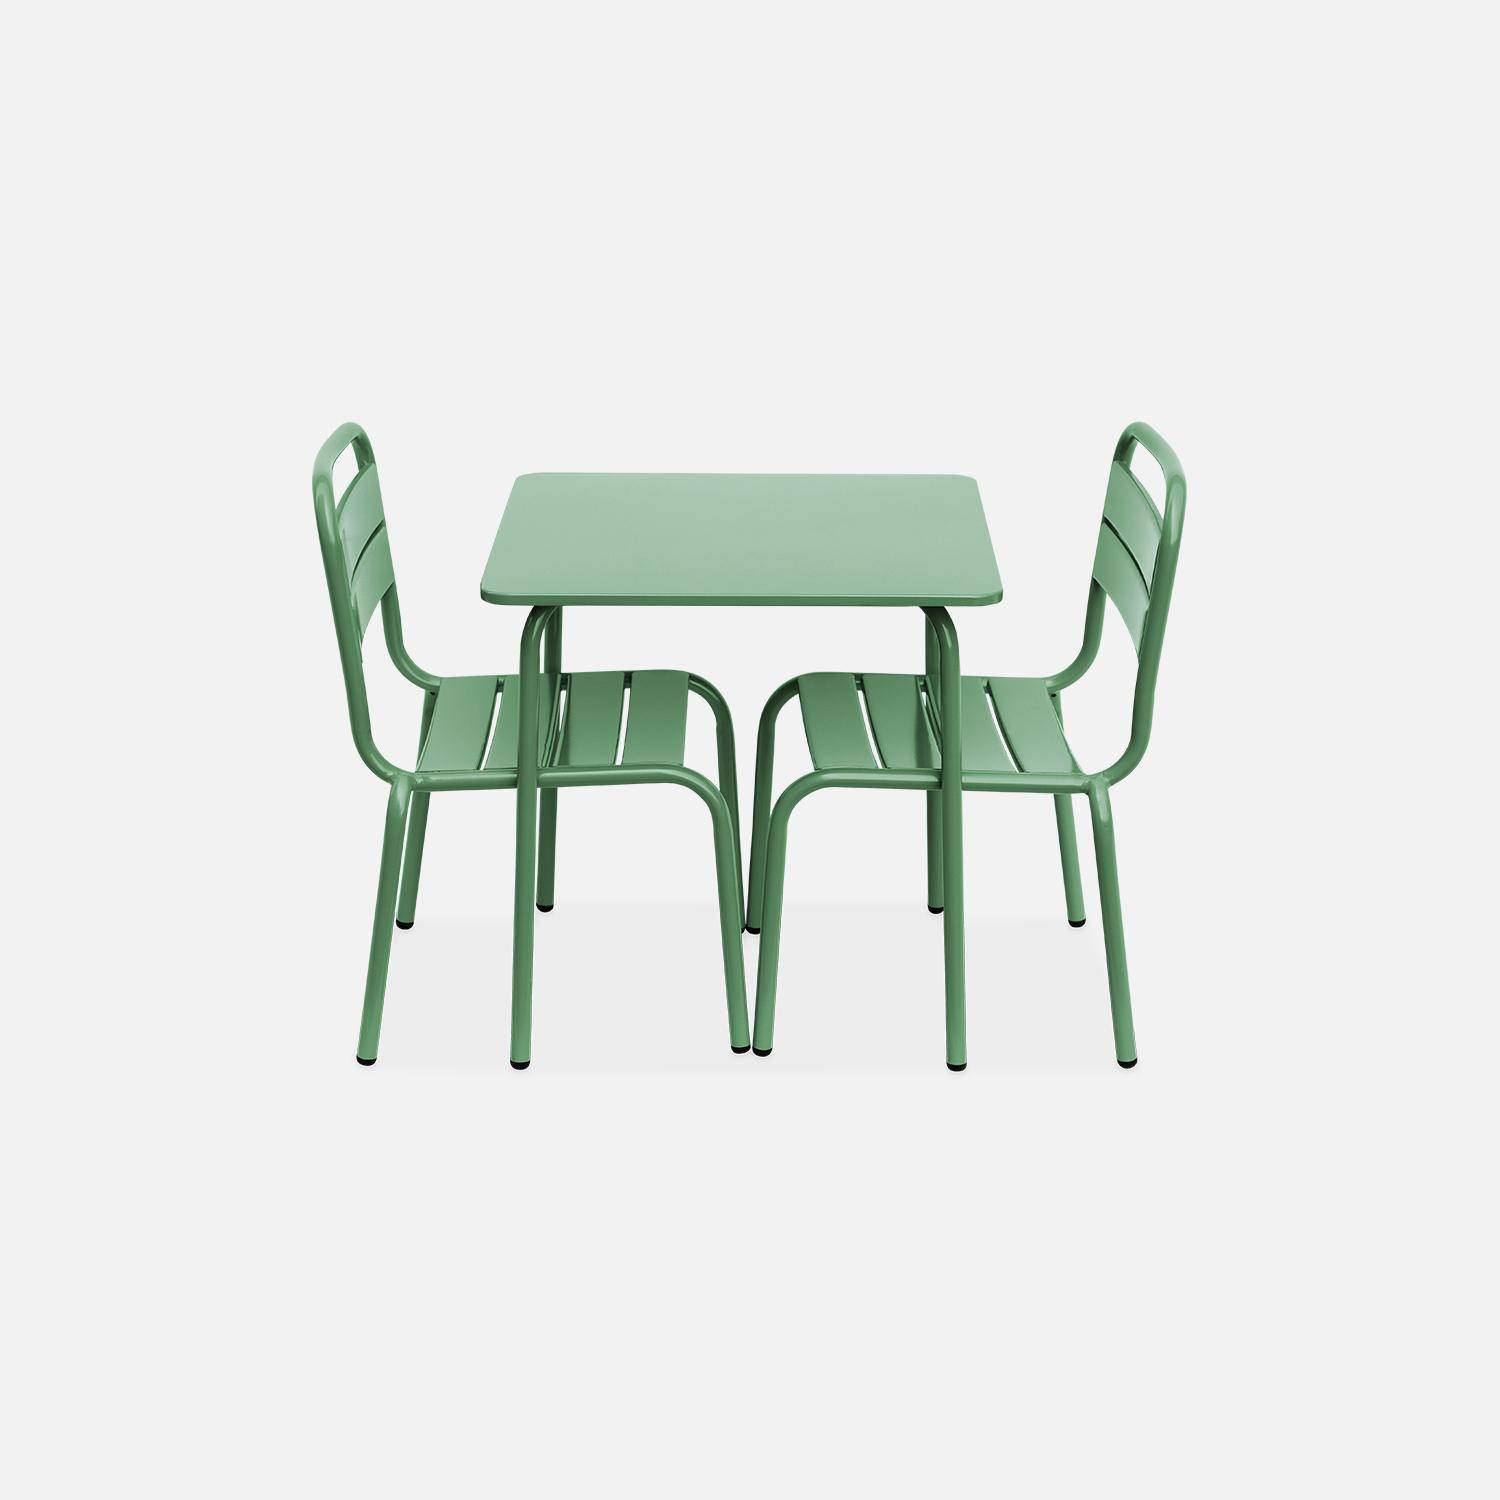 Tisch 48x48cm und 2 Stühle für Kinder, graugrün, 48x48cm, für draußen verwendbar - Anna,sweeek,Photo5